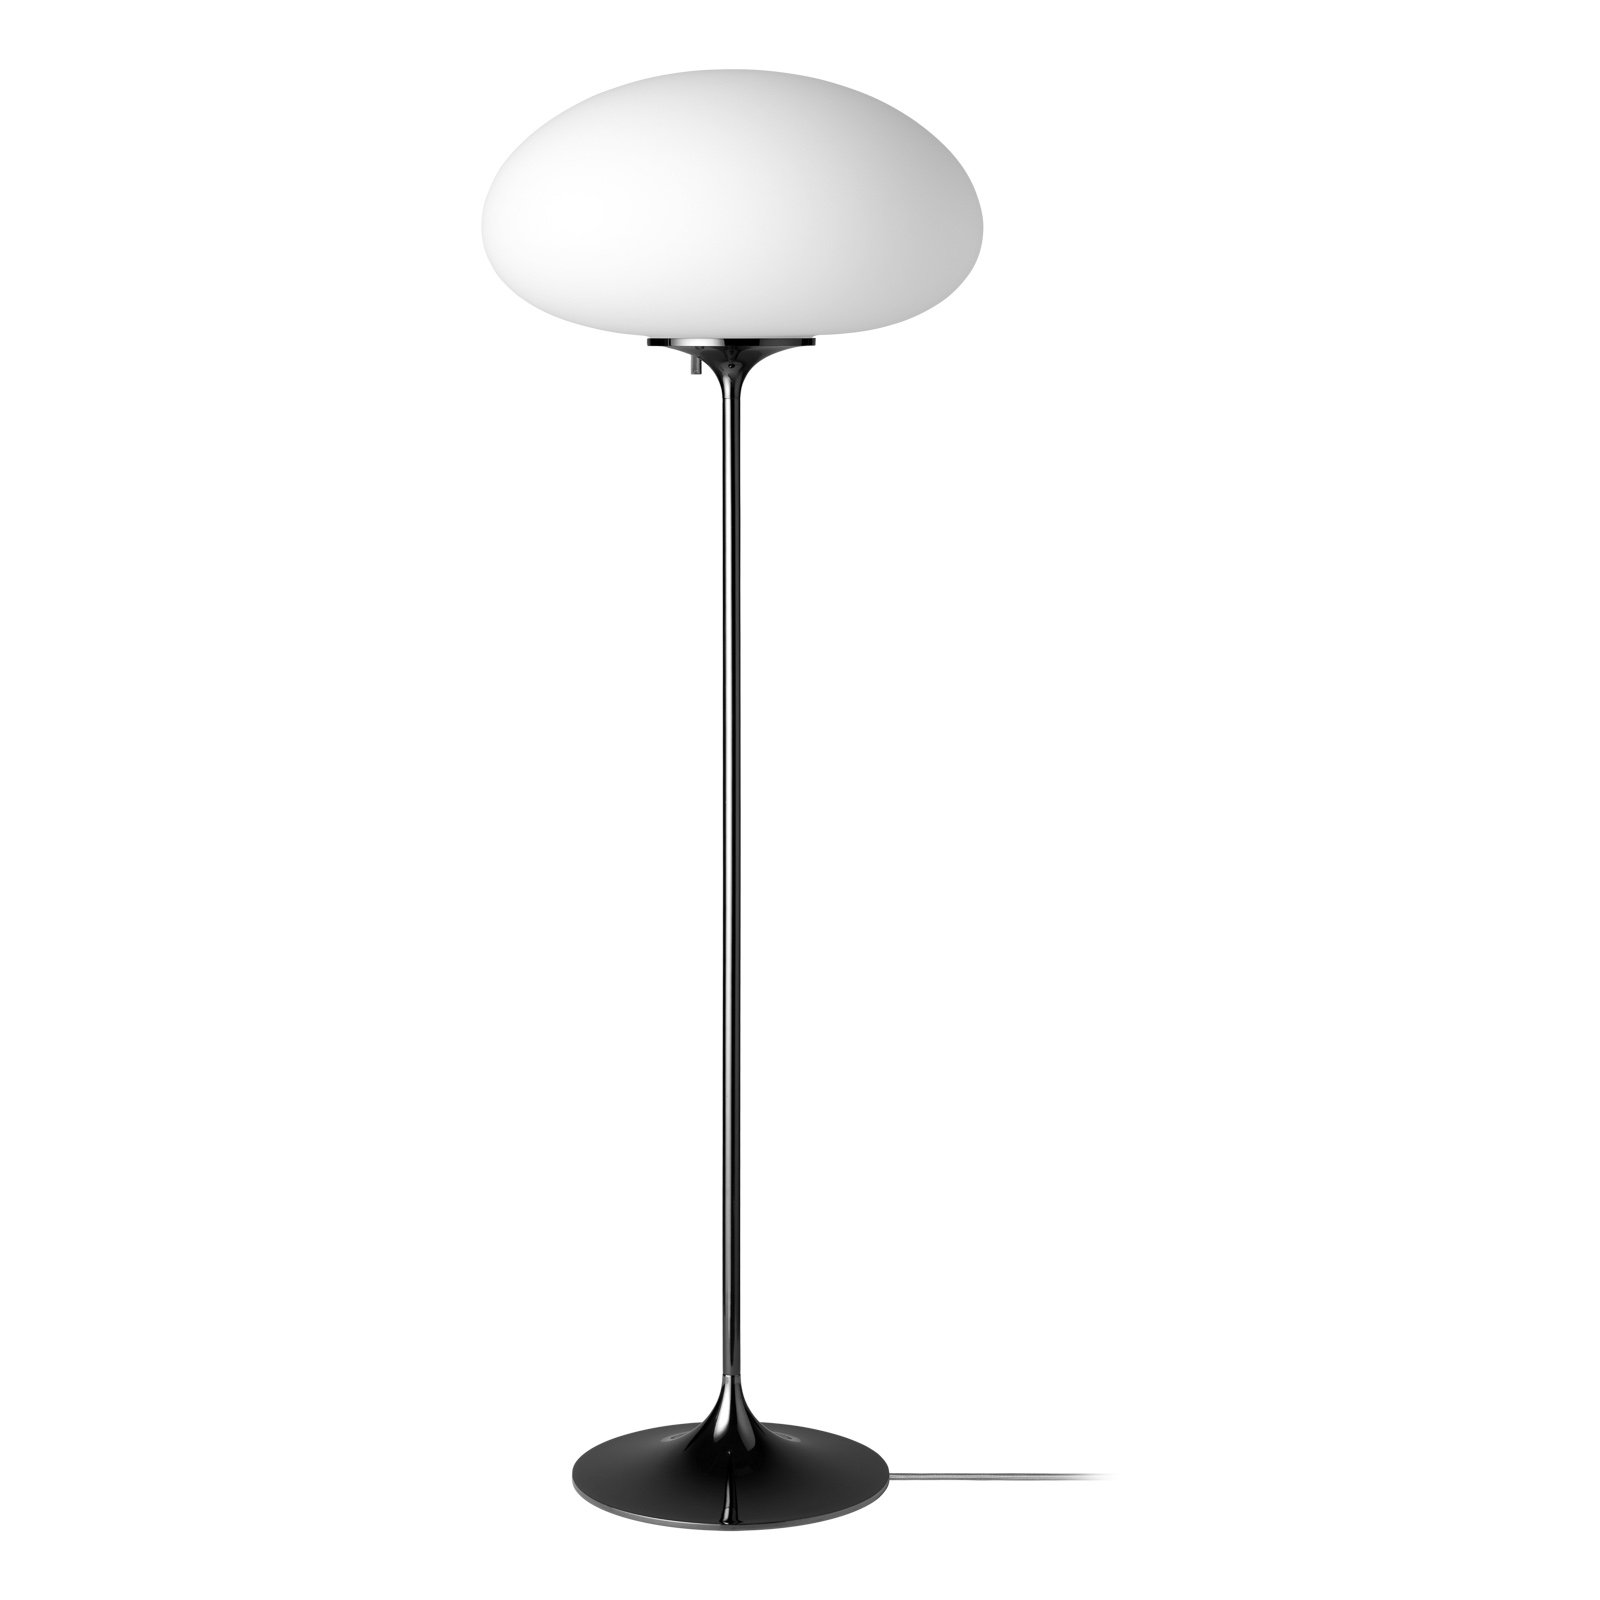 GUBI Stemlite floor lamp, black chrome, 110 cm